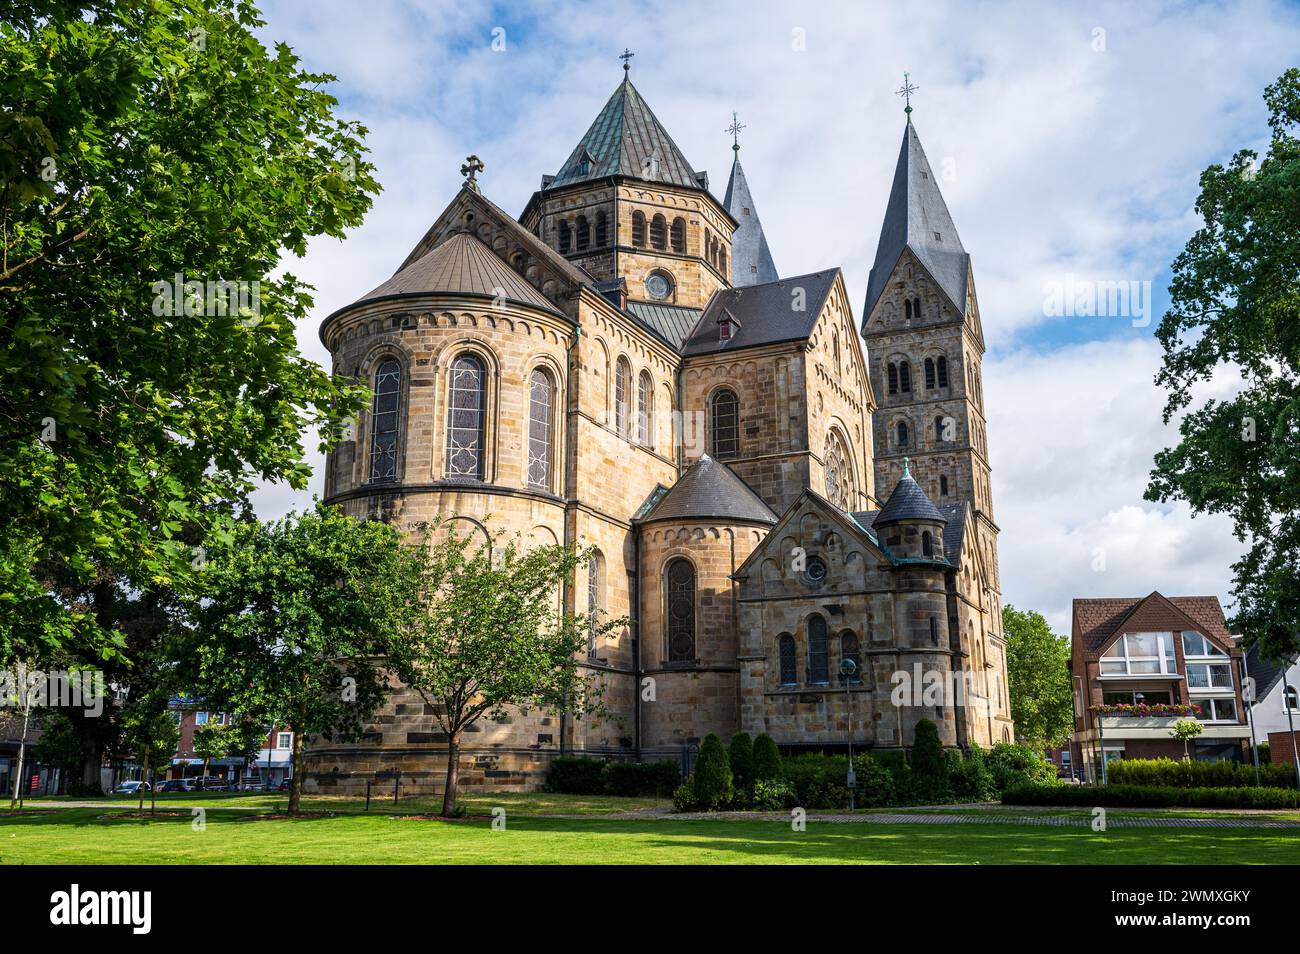 Maestosa cattedrale gotica con merlature, inondata di luce solare, contro un cielo nuvoloso, Basilica di Sant'Anna, Neuenkirchen, Renania settentrionale-Vestfalia Foto Stock